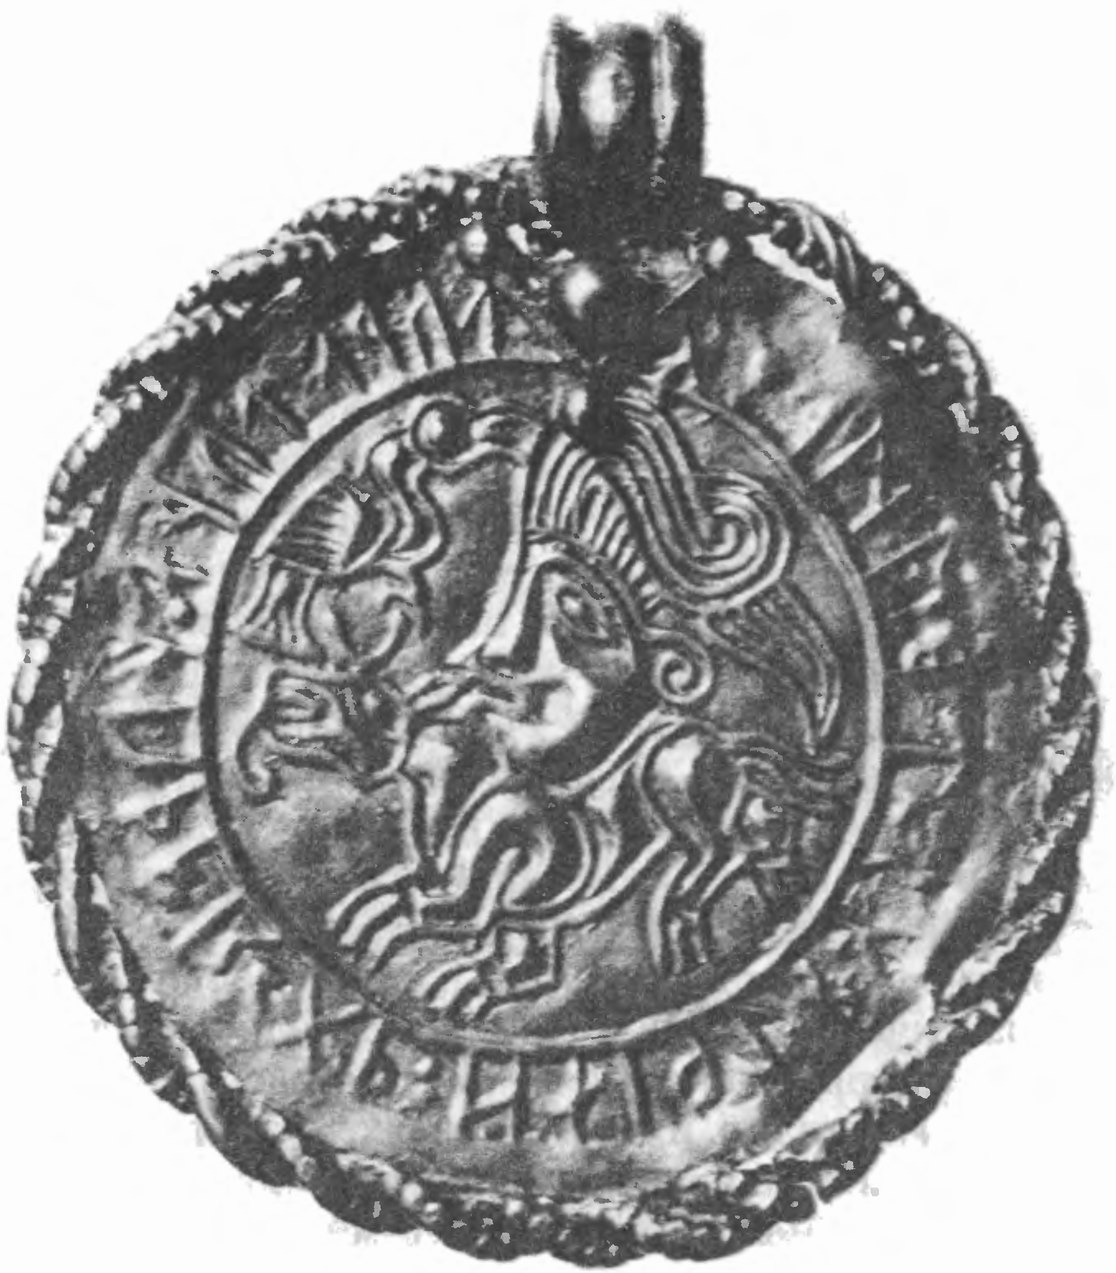 Рис. 9. Древнегерманское золотое украшение с выбитой рунической надписью